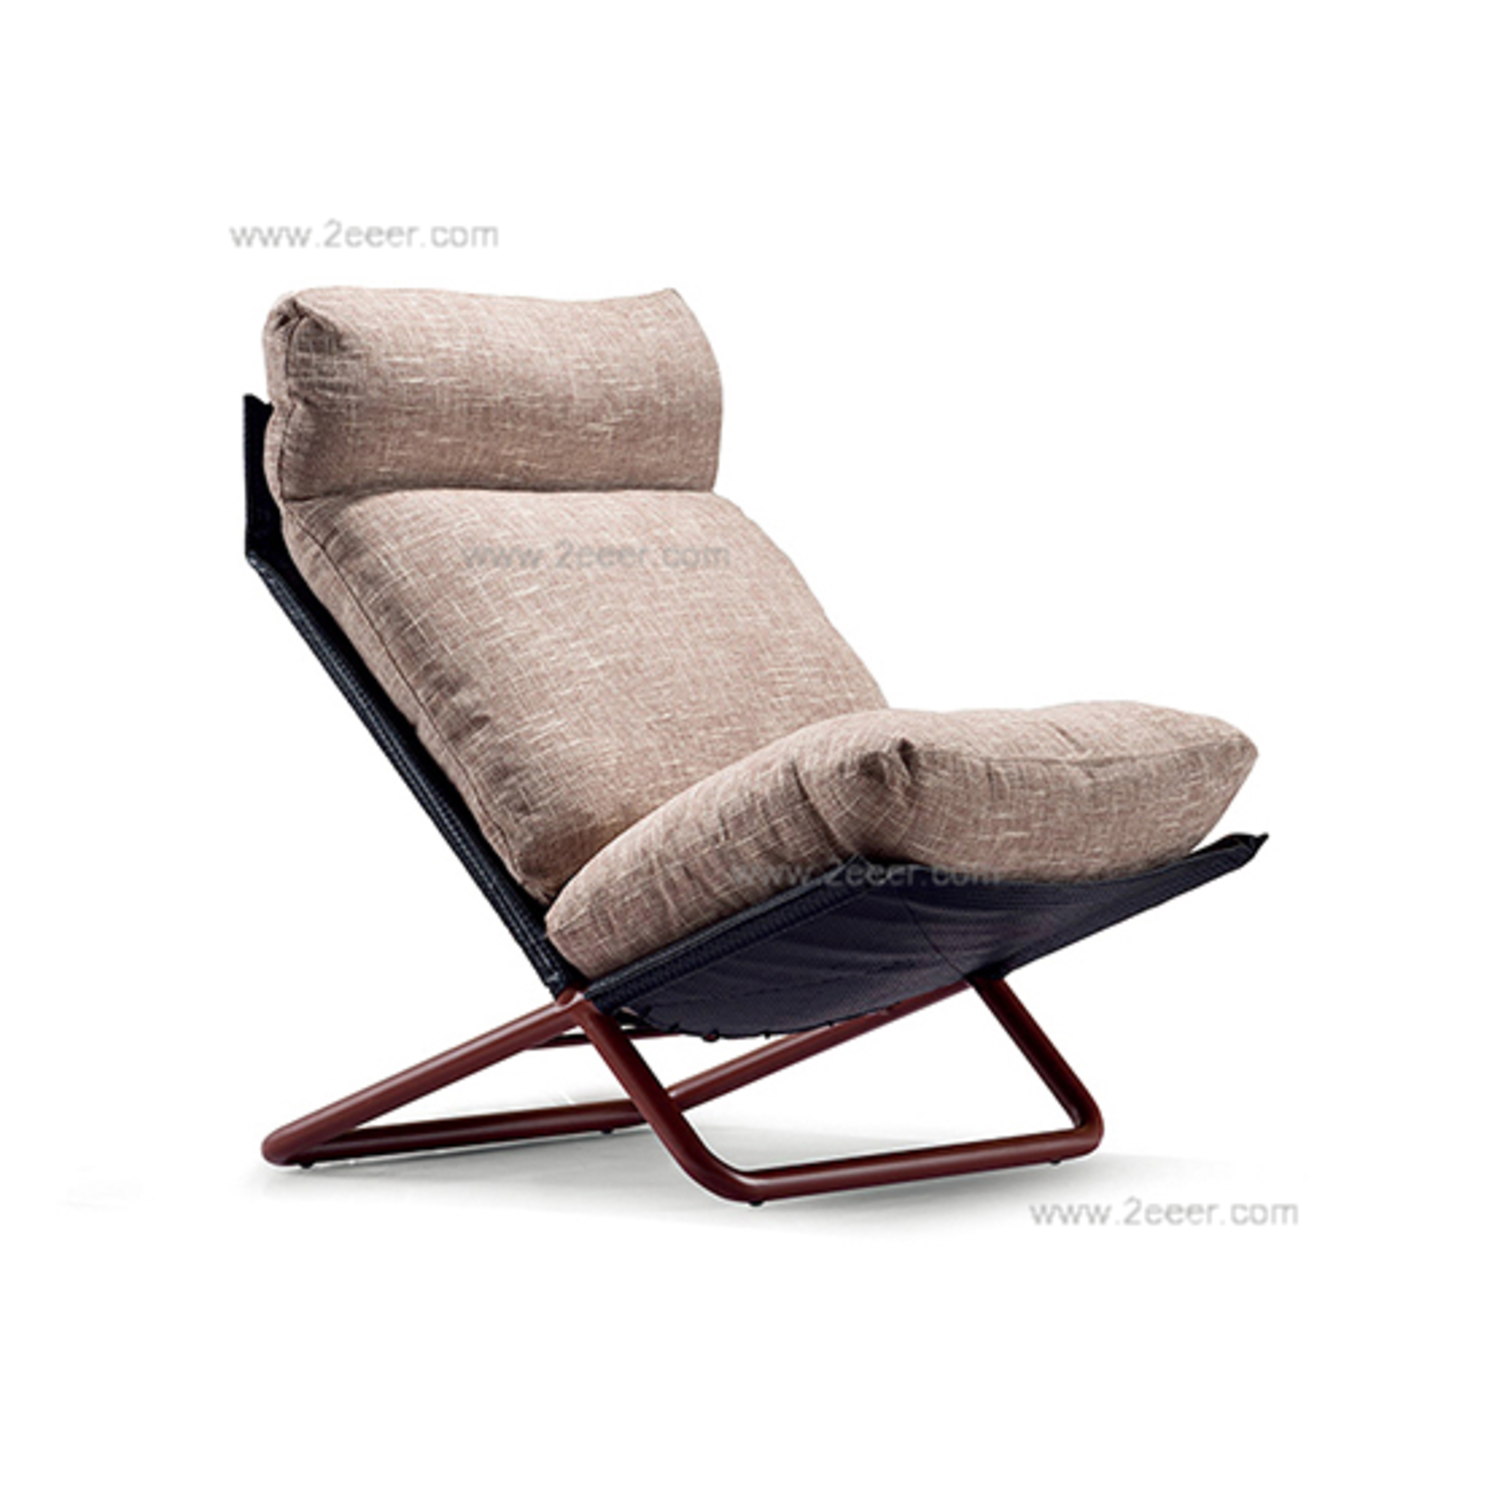 休闲椅-现代简约-铁制内架+喷漆铁脚+皮布结合-2